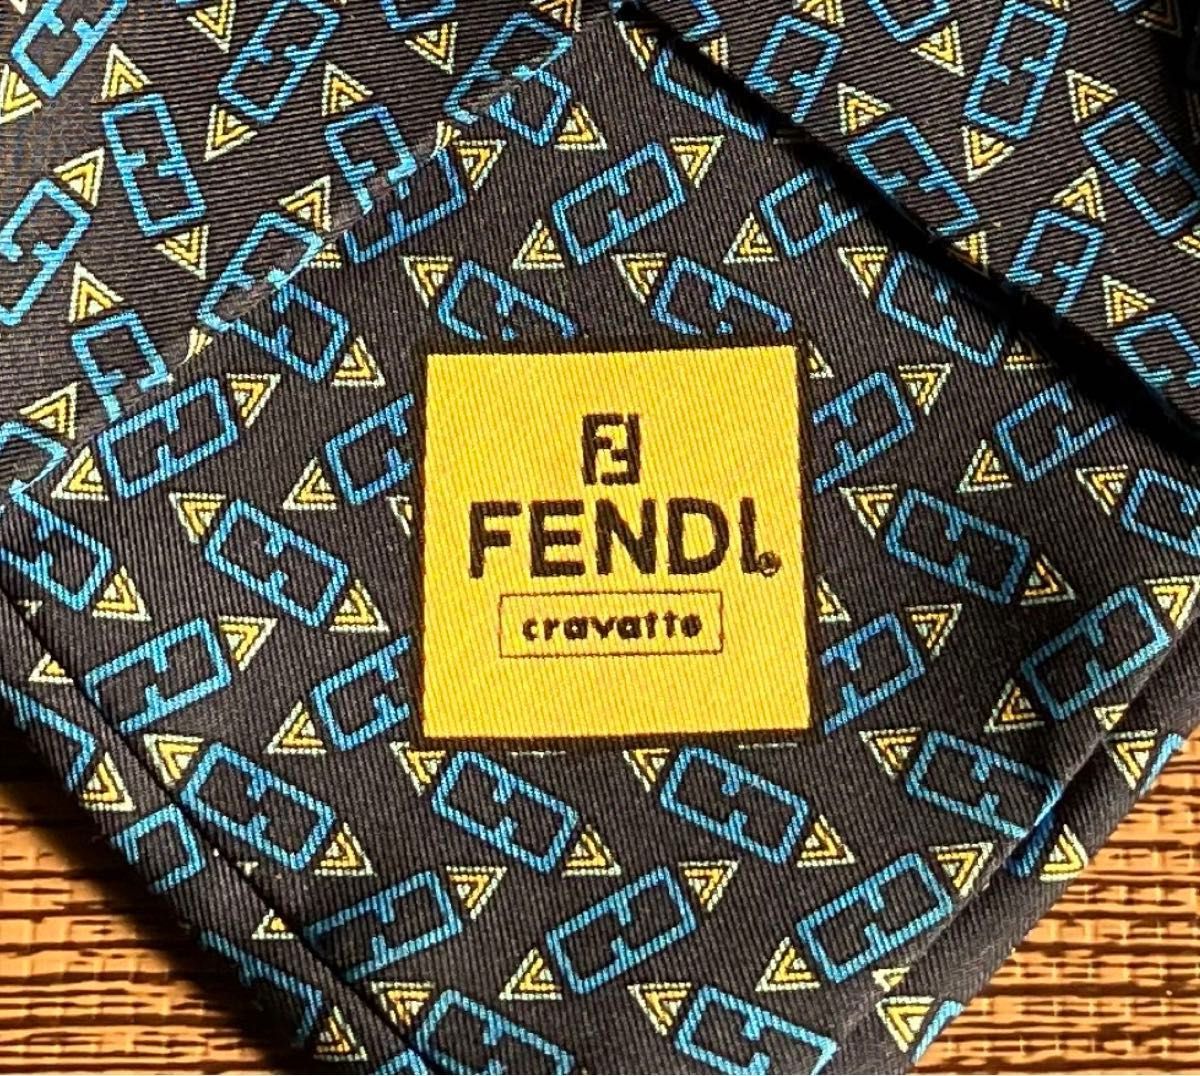 フェンディ ネクタイ ブラック青系 イタリア製 FENDI NECKTIE MADE IN ITALY【USED】